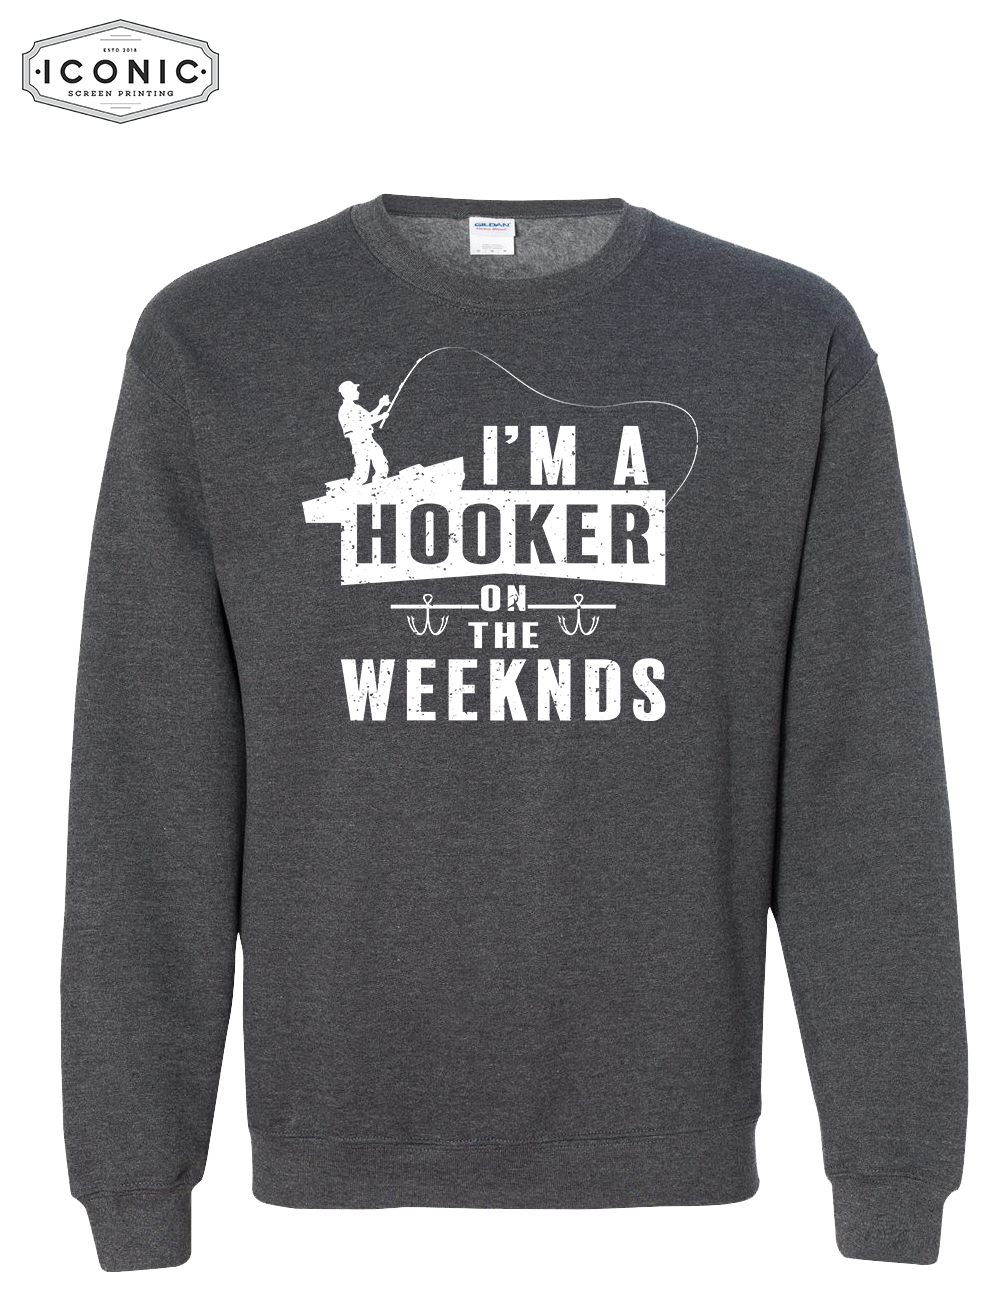 Hooker on the Weekends - Heavy Blend Sweatshirt